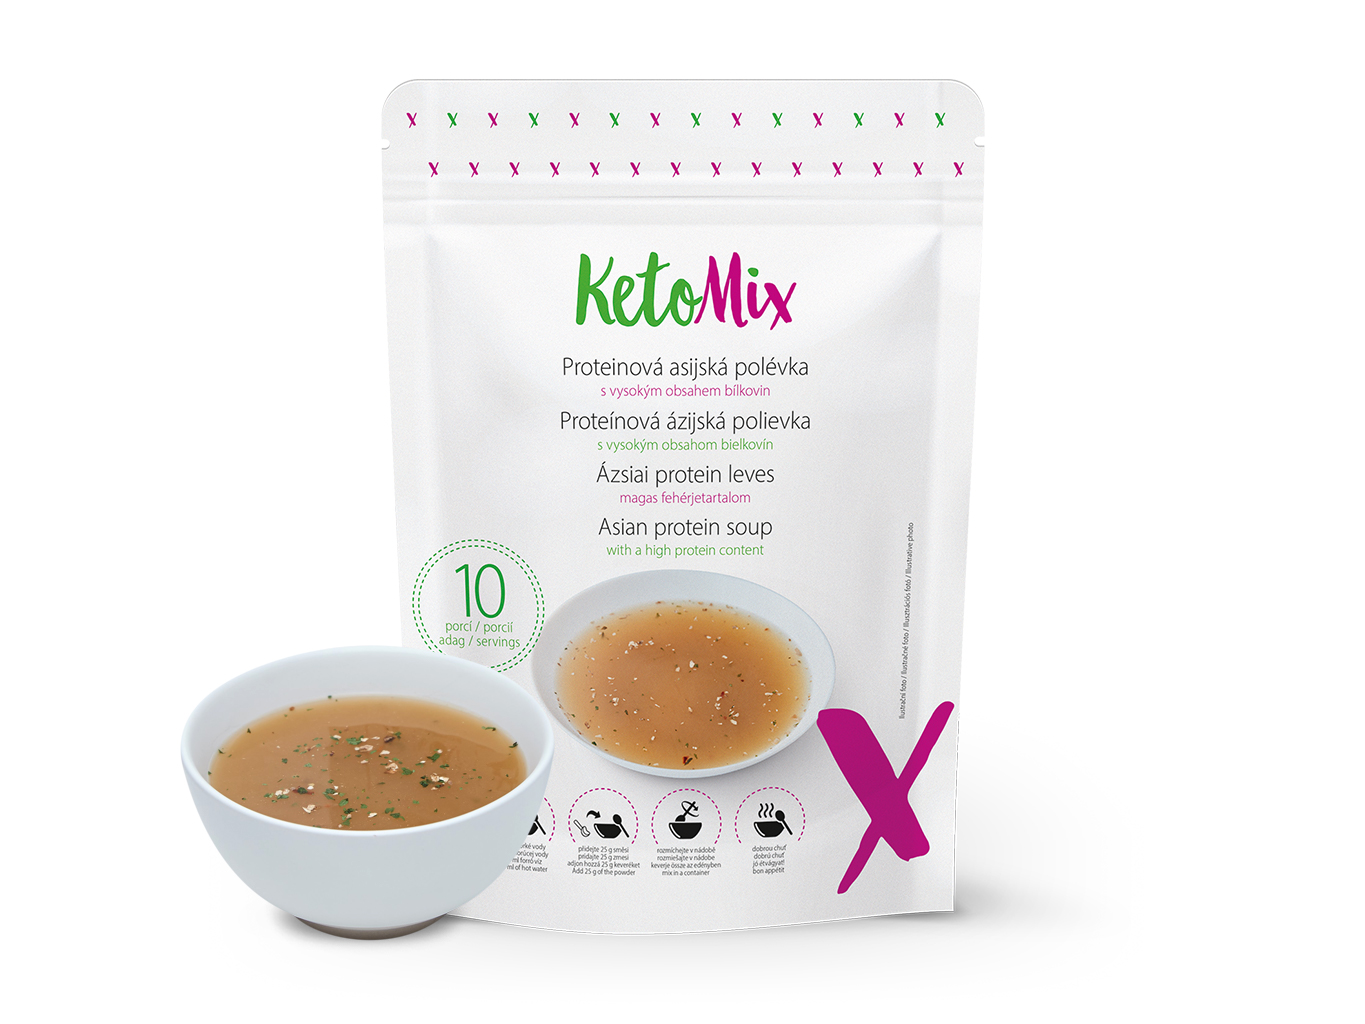 KetoMix Proteinová asijská polévka (10 porcí) 250 g